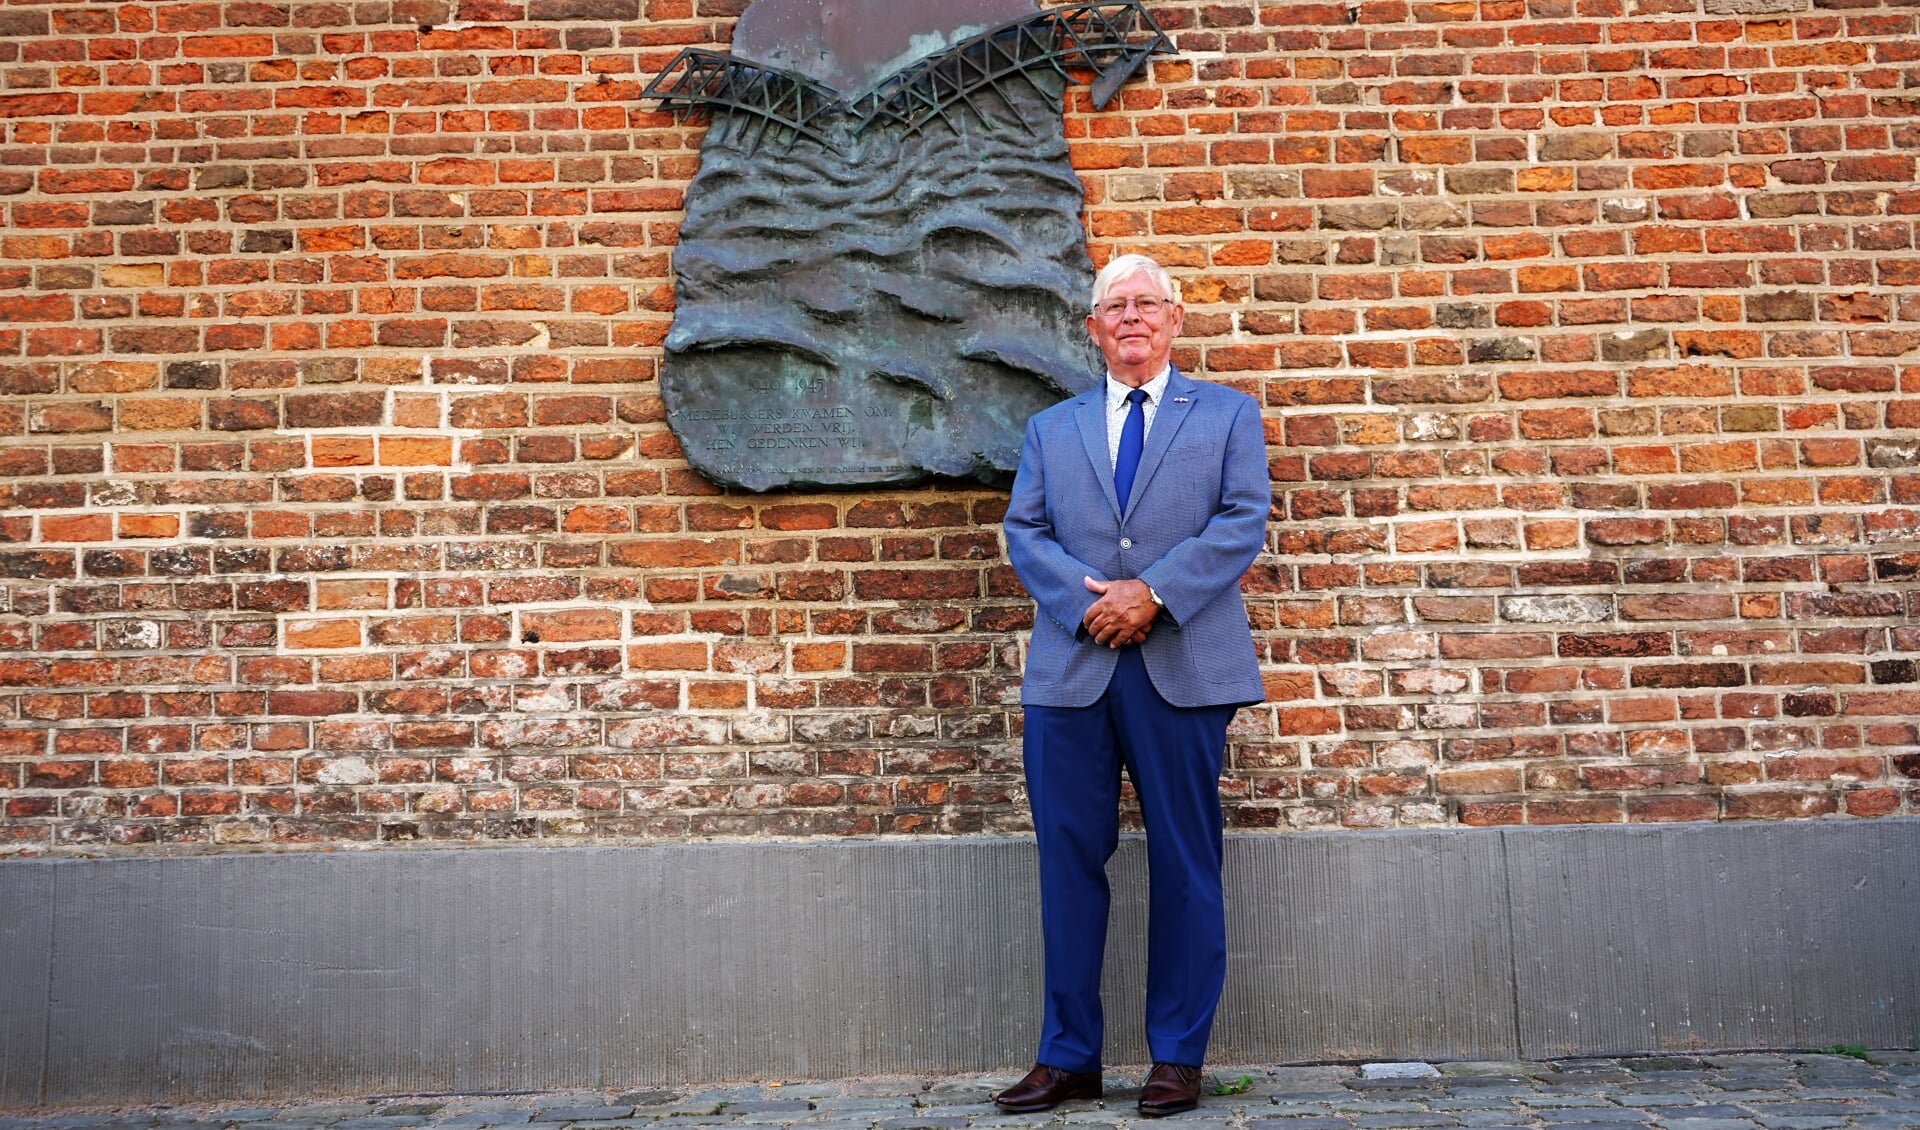  Arie van Driesten met op de achtergrond het herdenkingsmonument op de Markt.